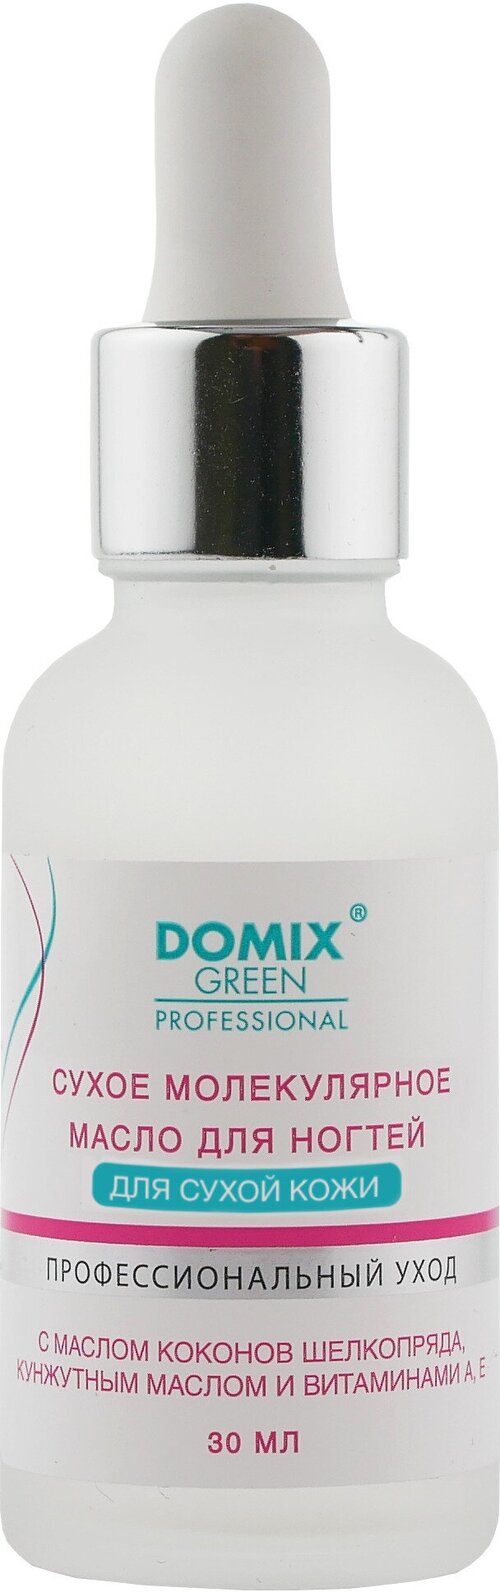 DOMIX Сухое молекулярное масло для ногтей для сухой кожи, 30 мл